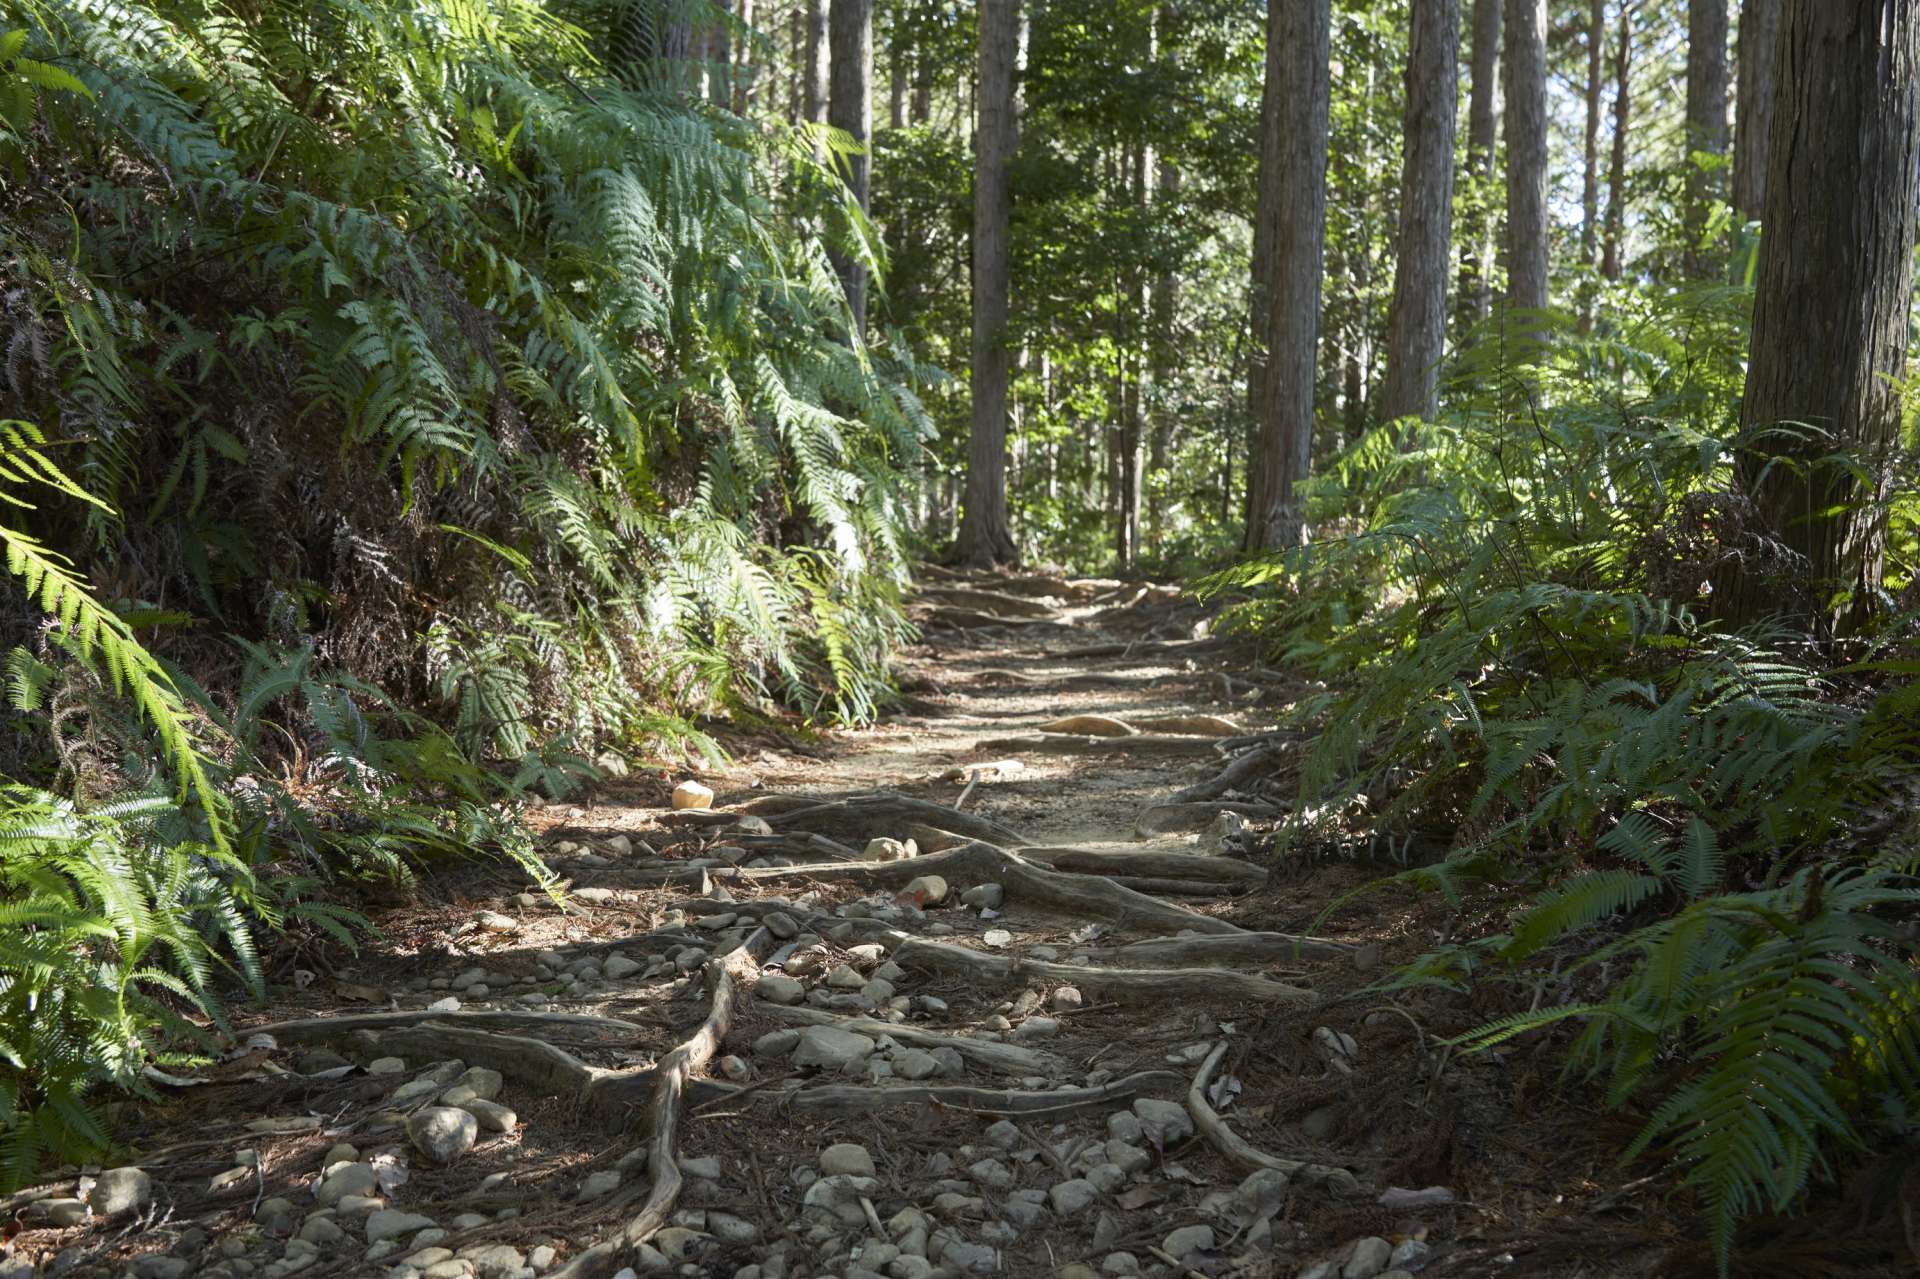 熊野の山中に残る参詣道、熊野古道。蟻の熊野詣と称されるほど、多くの人がこの道を歩いた